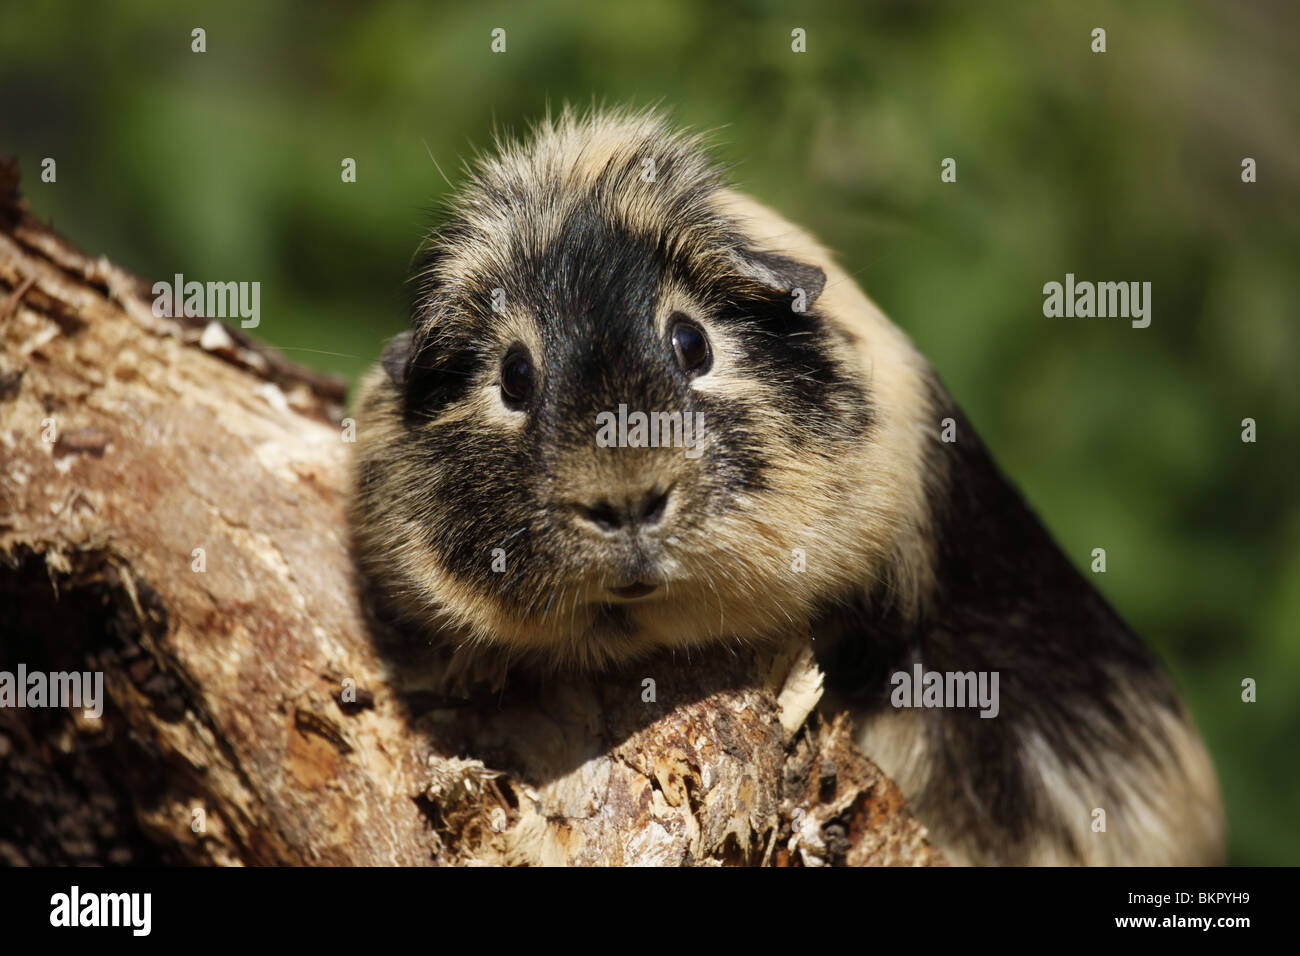 Meerschwein / guinea pig Stock Photo